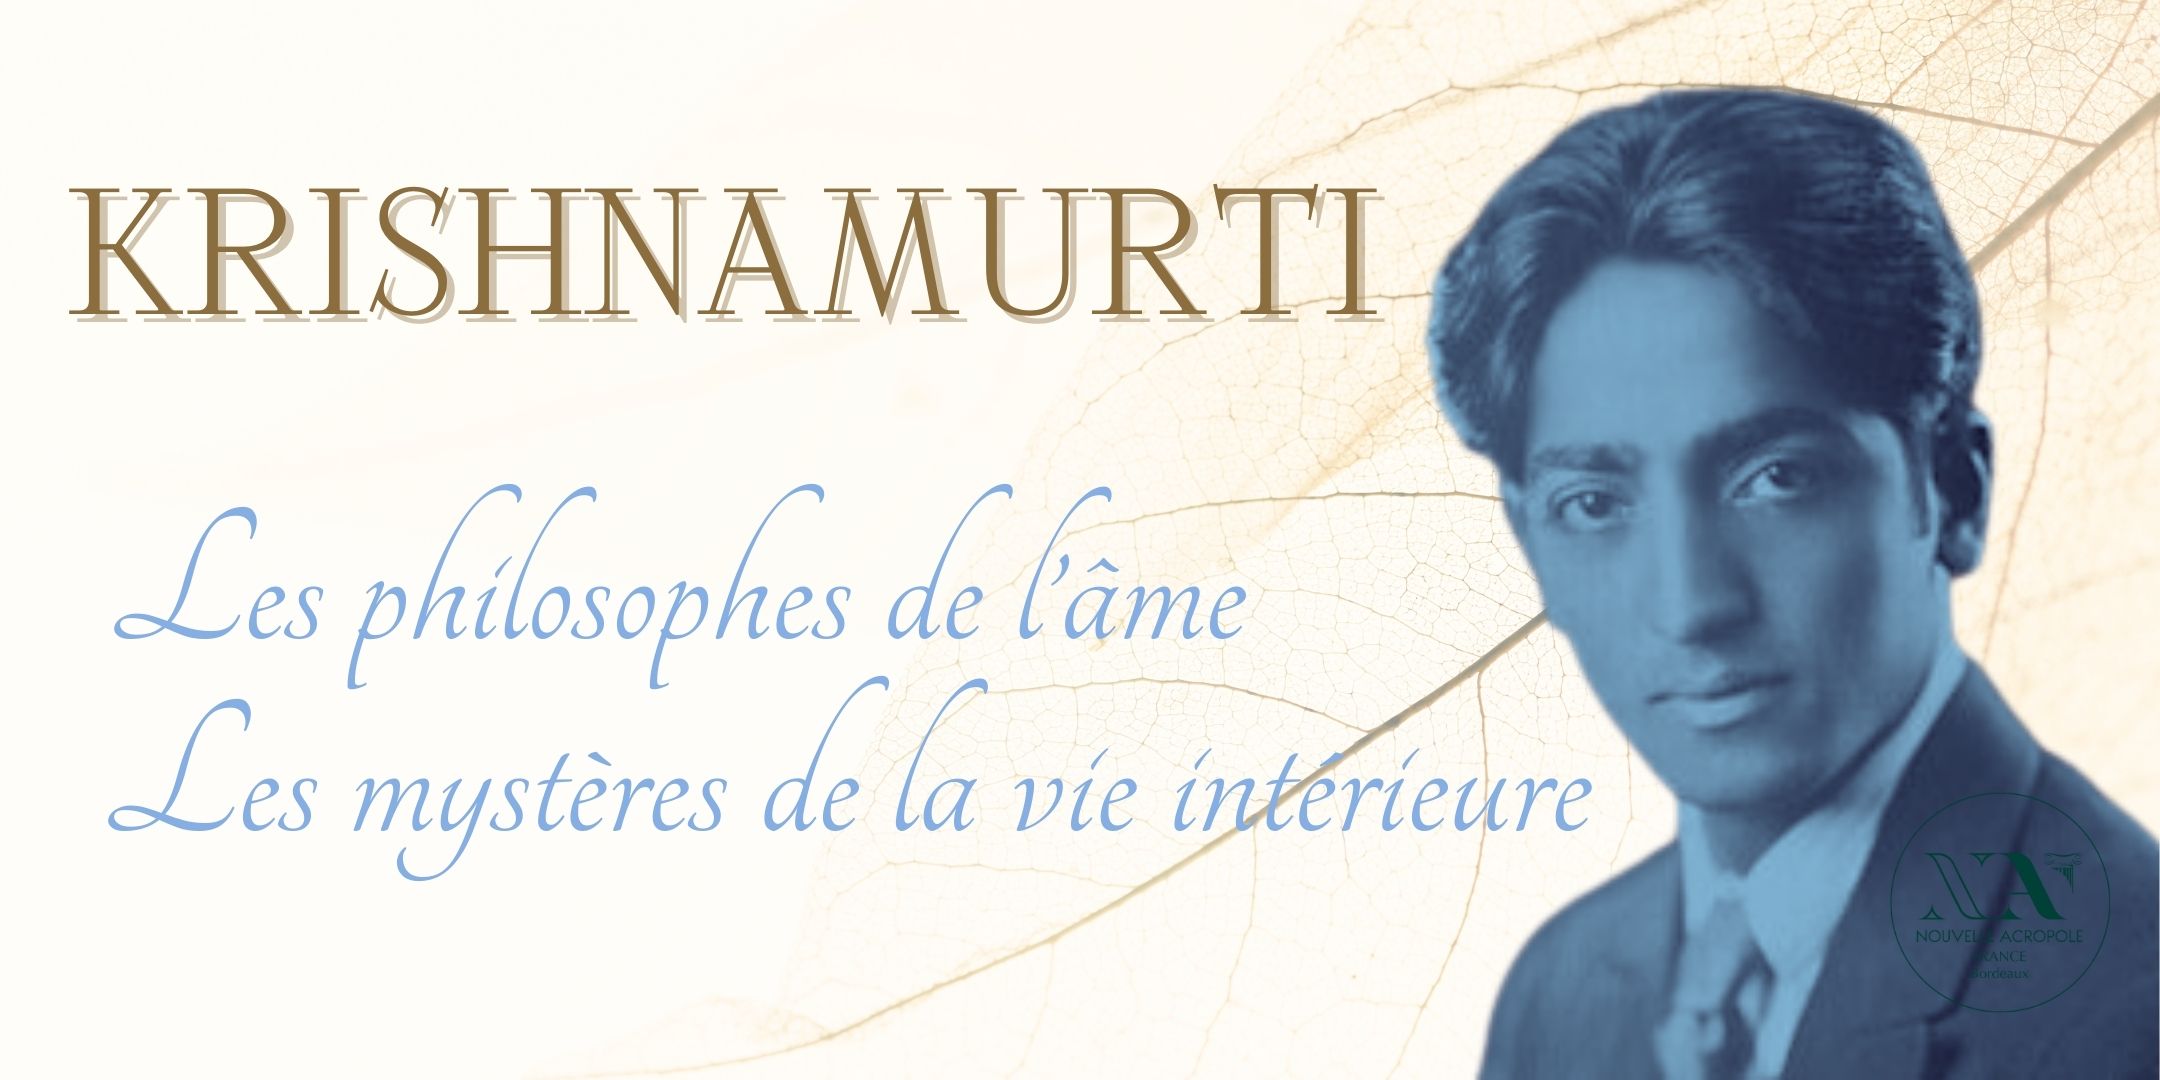 Krishnamurti / Les philosophes de l'âme et les mystères de la vie intérieure